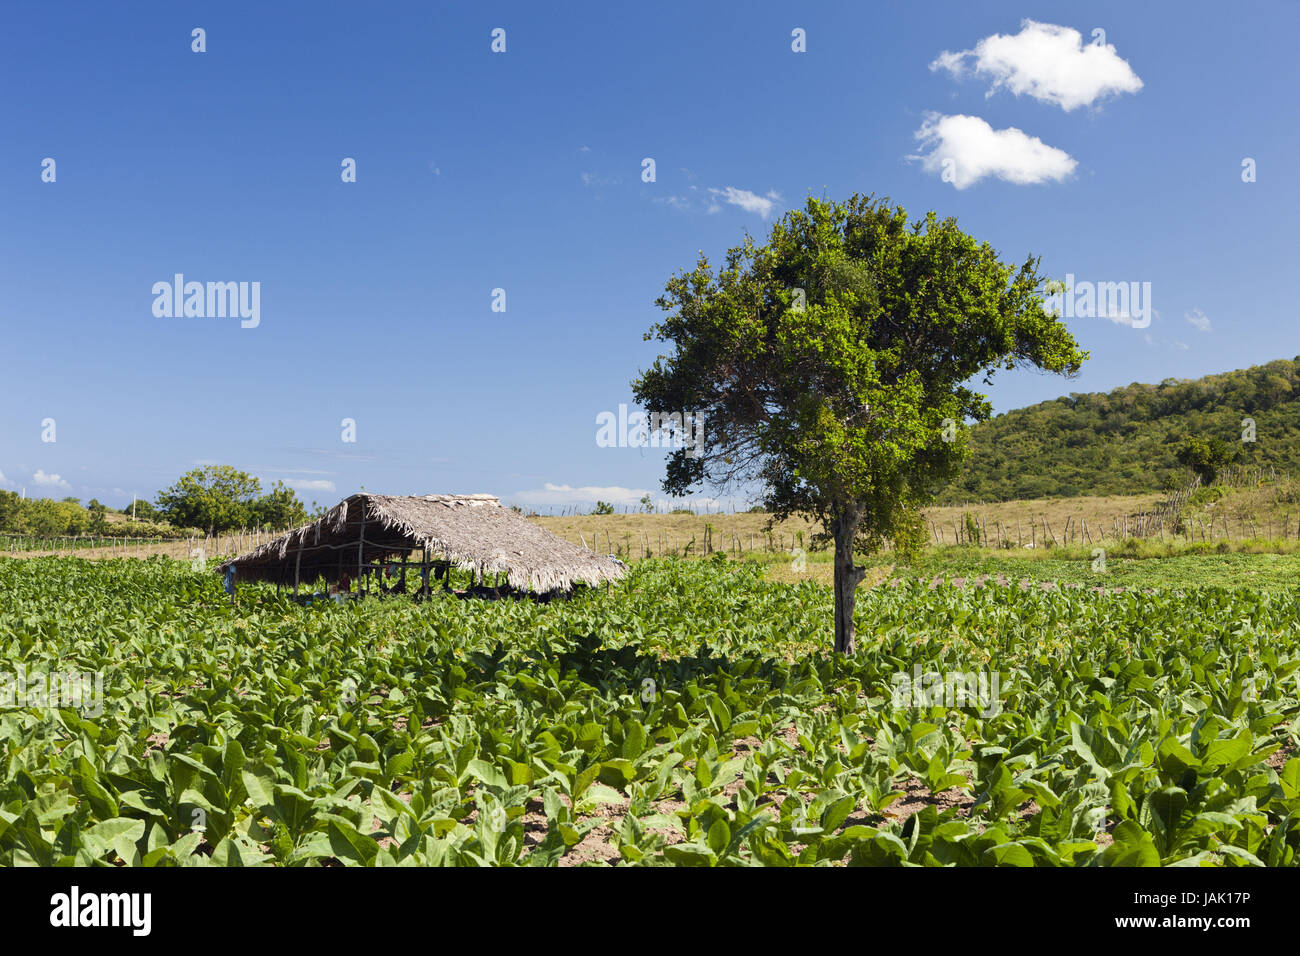 Tobacco plantation in the hinterland,Punta Rucia,the Dominican Republic, Stock Photo